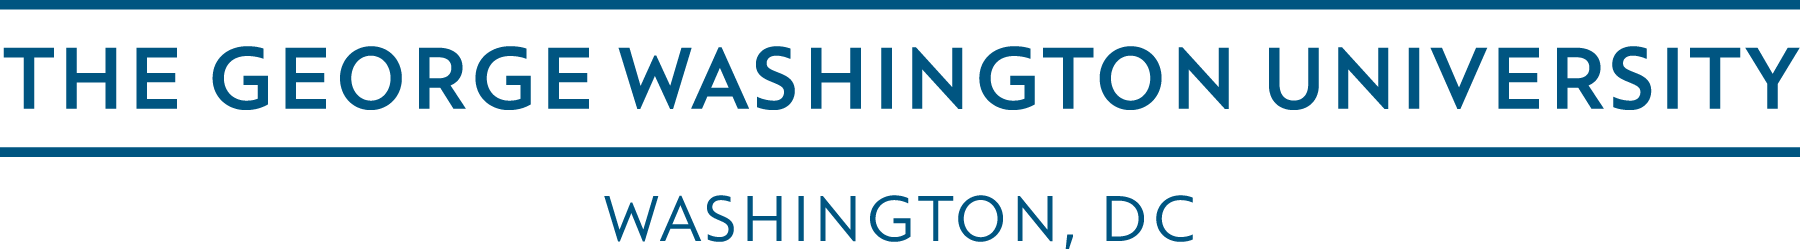 George Washington University Logo - Horizontal Logo | Marketing & Creative Services | The George ...